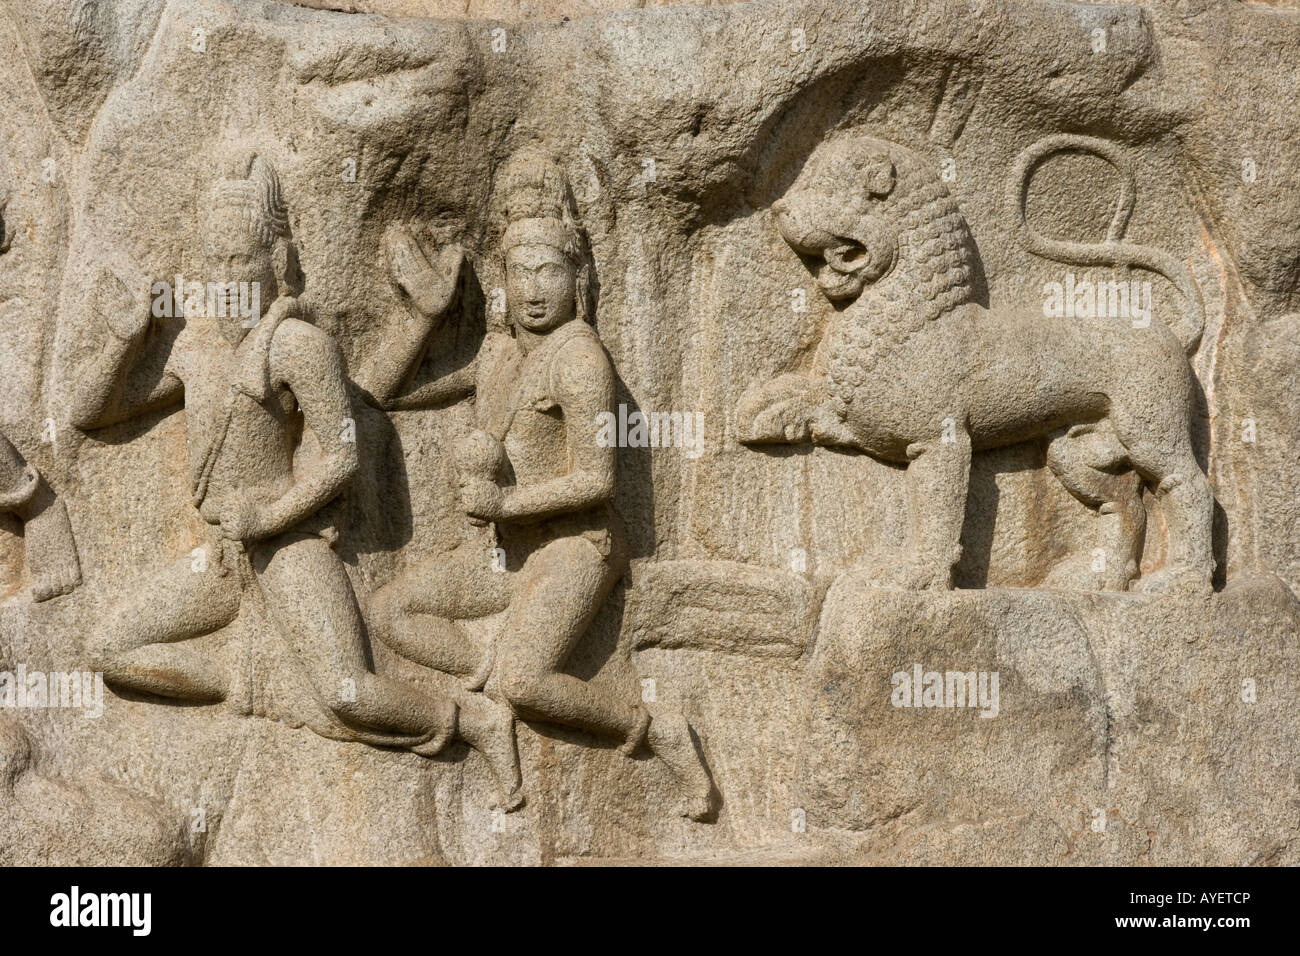 Arjuns penitenza Rock Carving in rilievo a Mamallapuram India del Sud Foto Stock